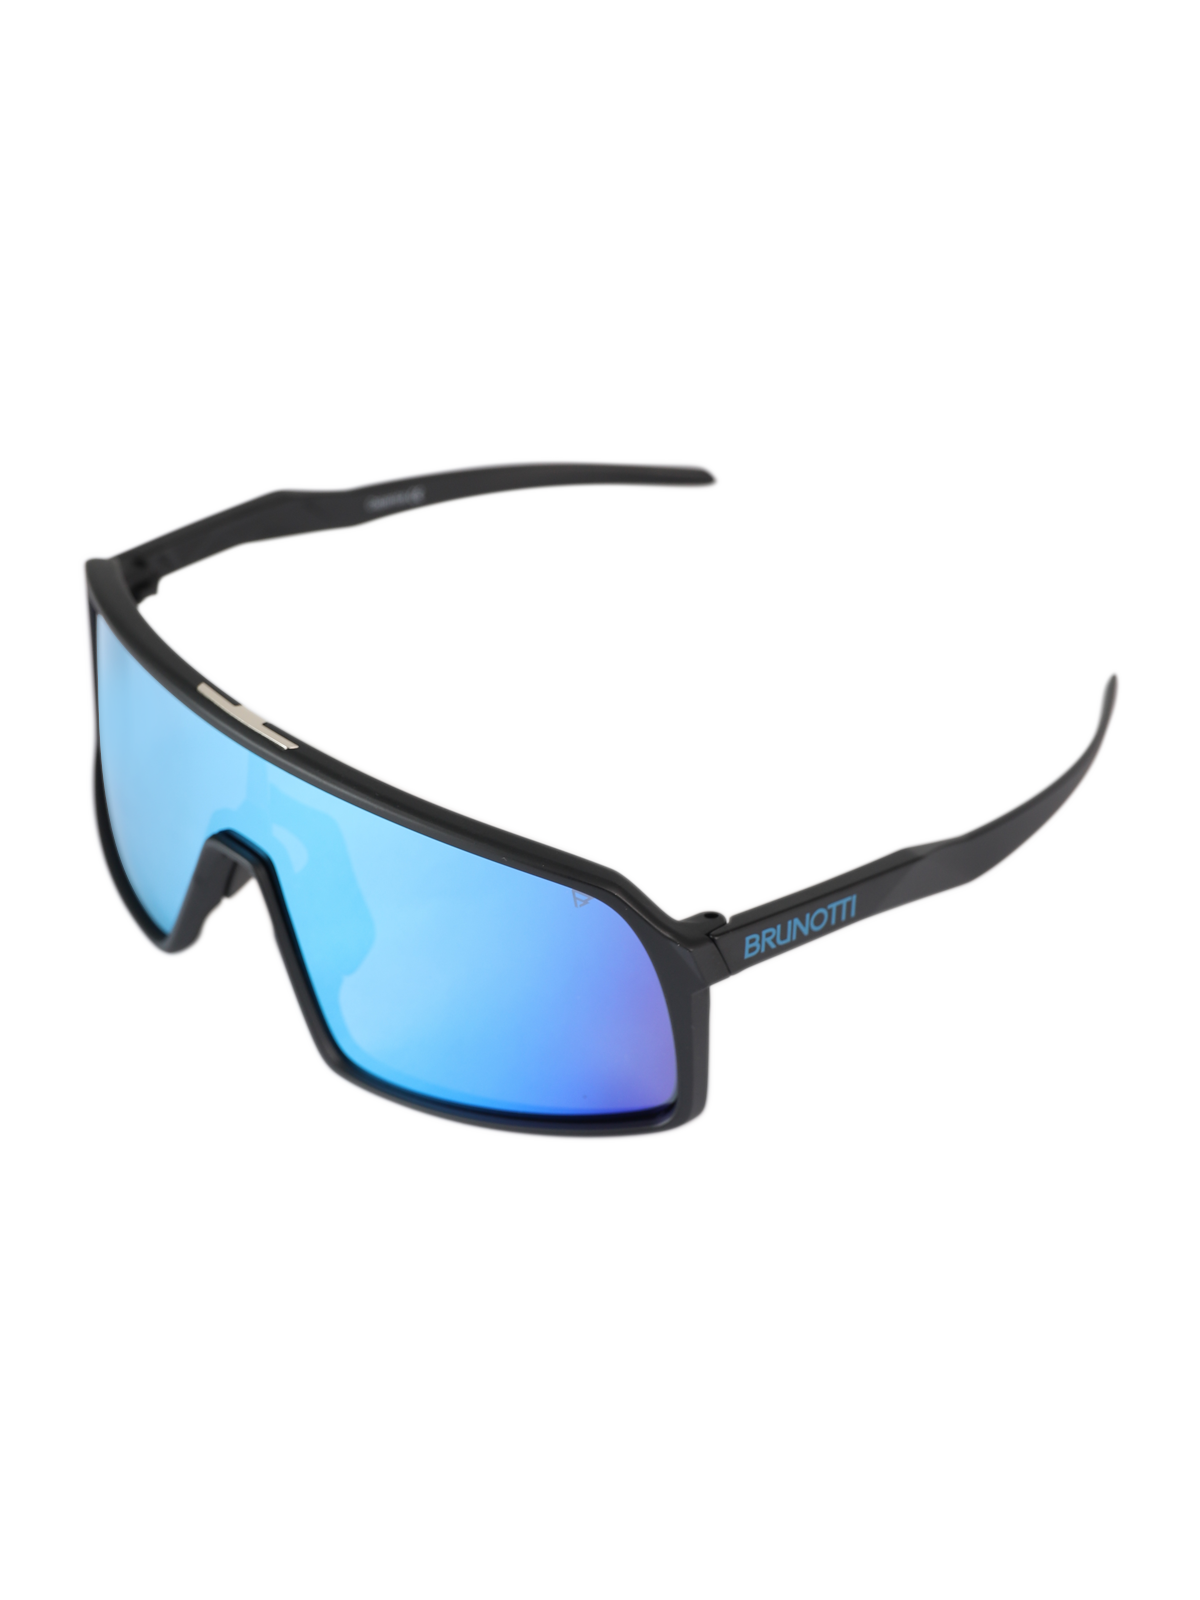 Caparica Unisex Sunglasses | Blue